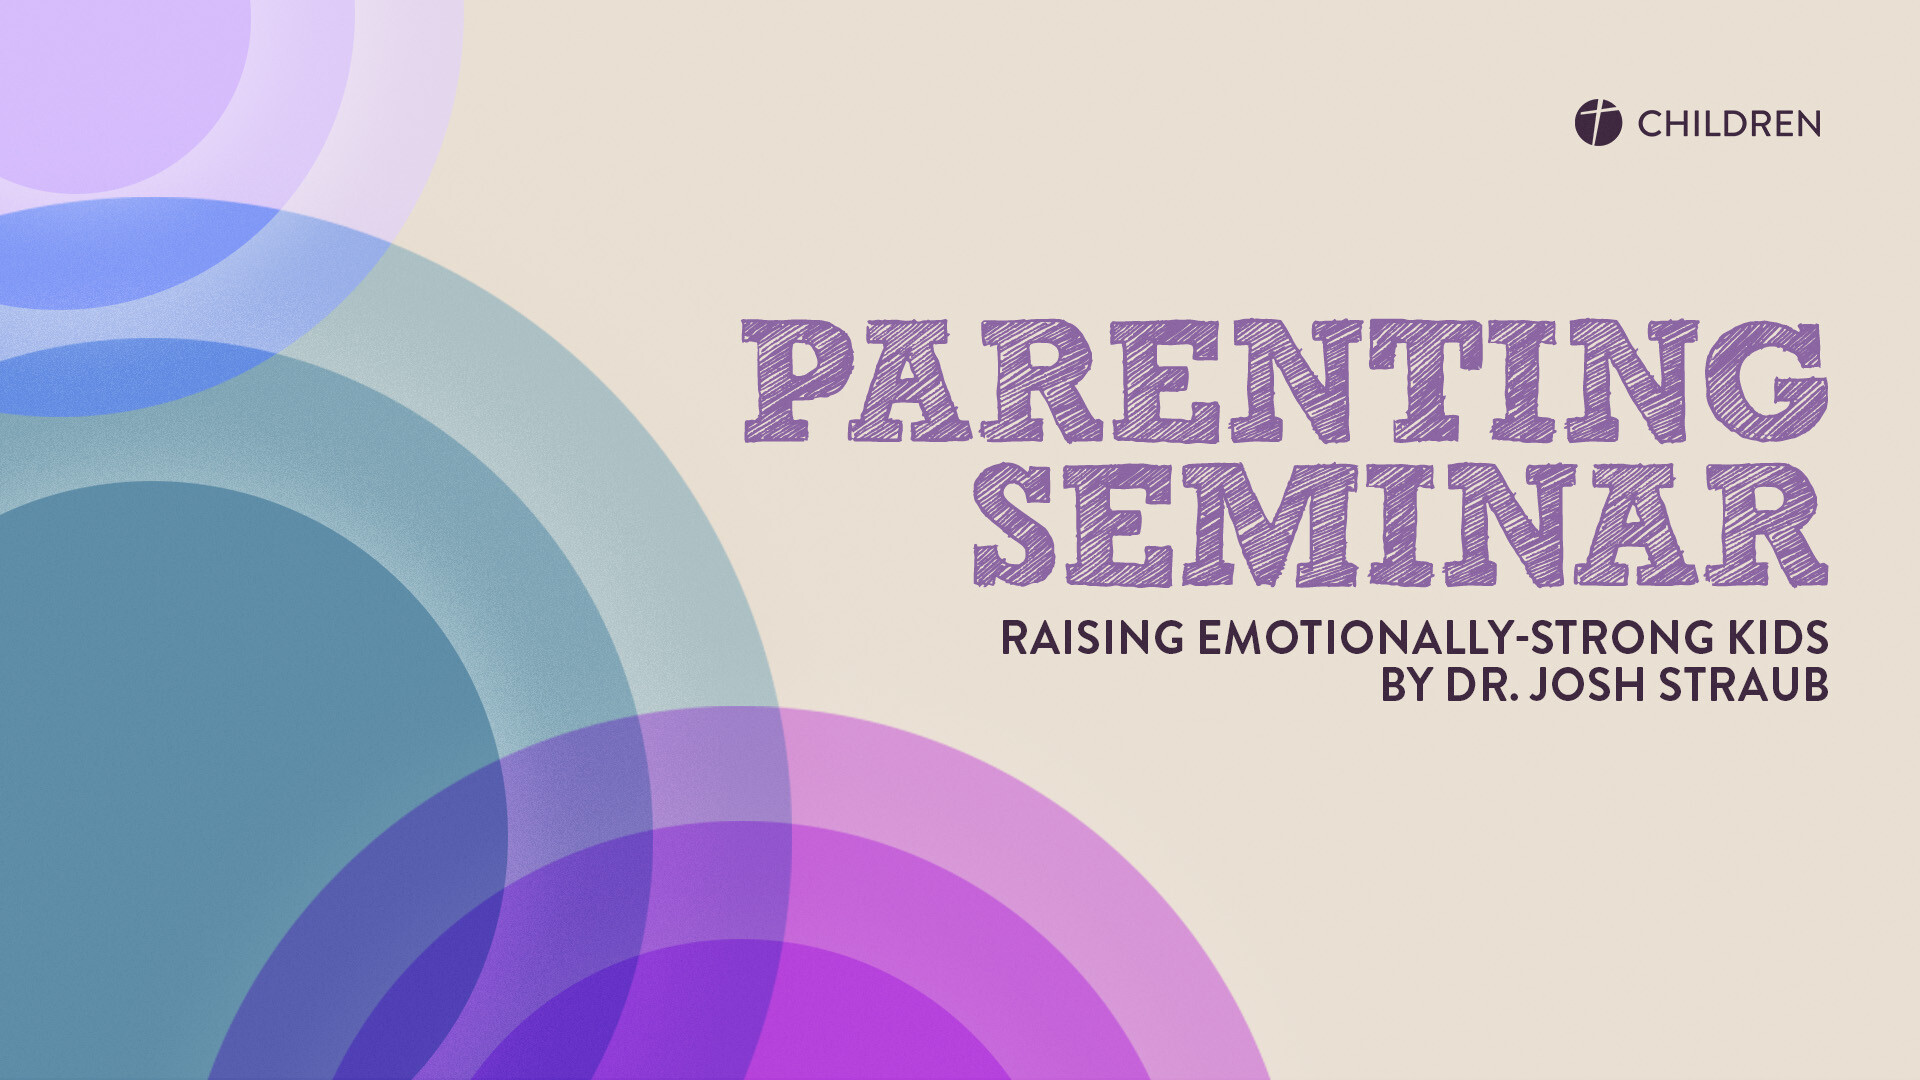 Parenting Seminar